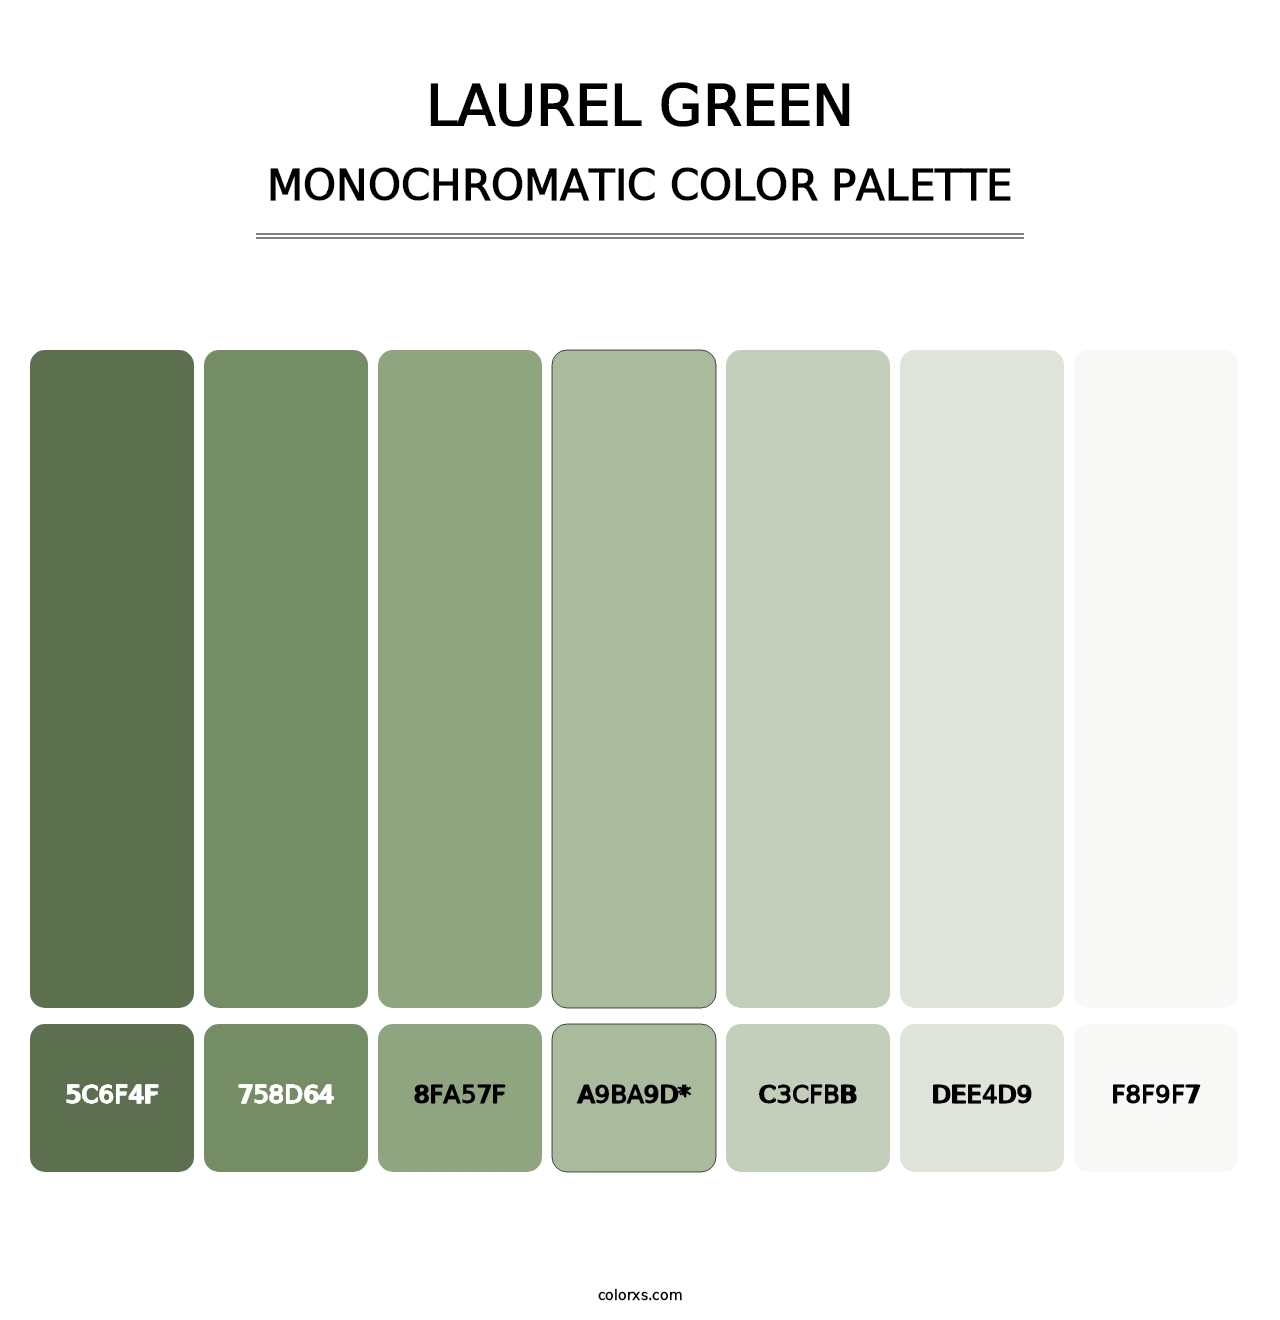 Laurel Green - Monochromatic Color Palette